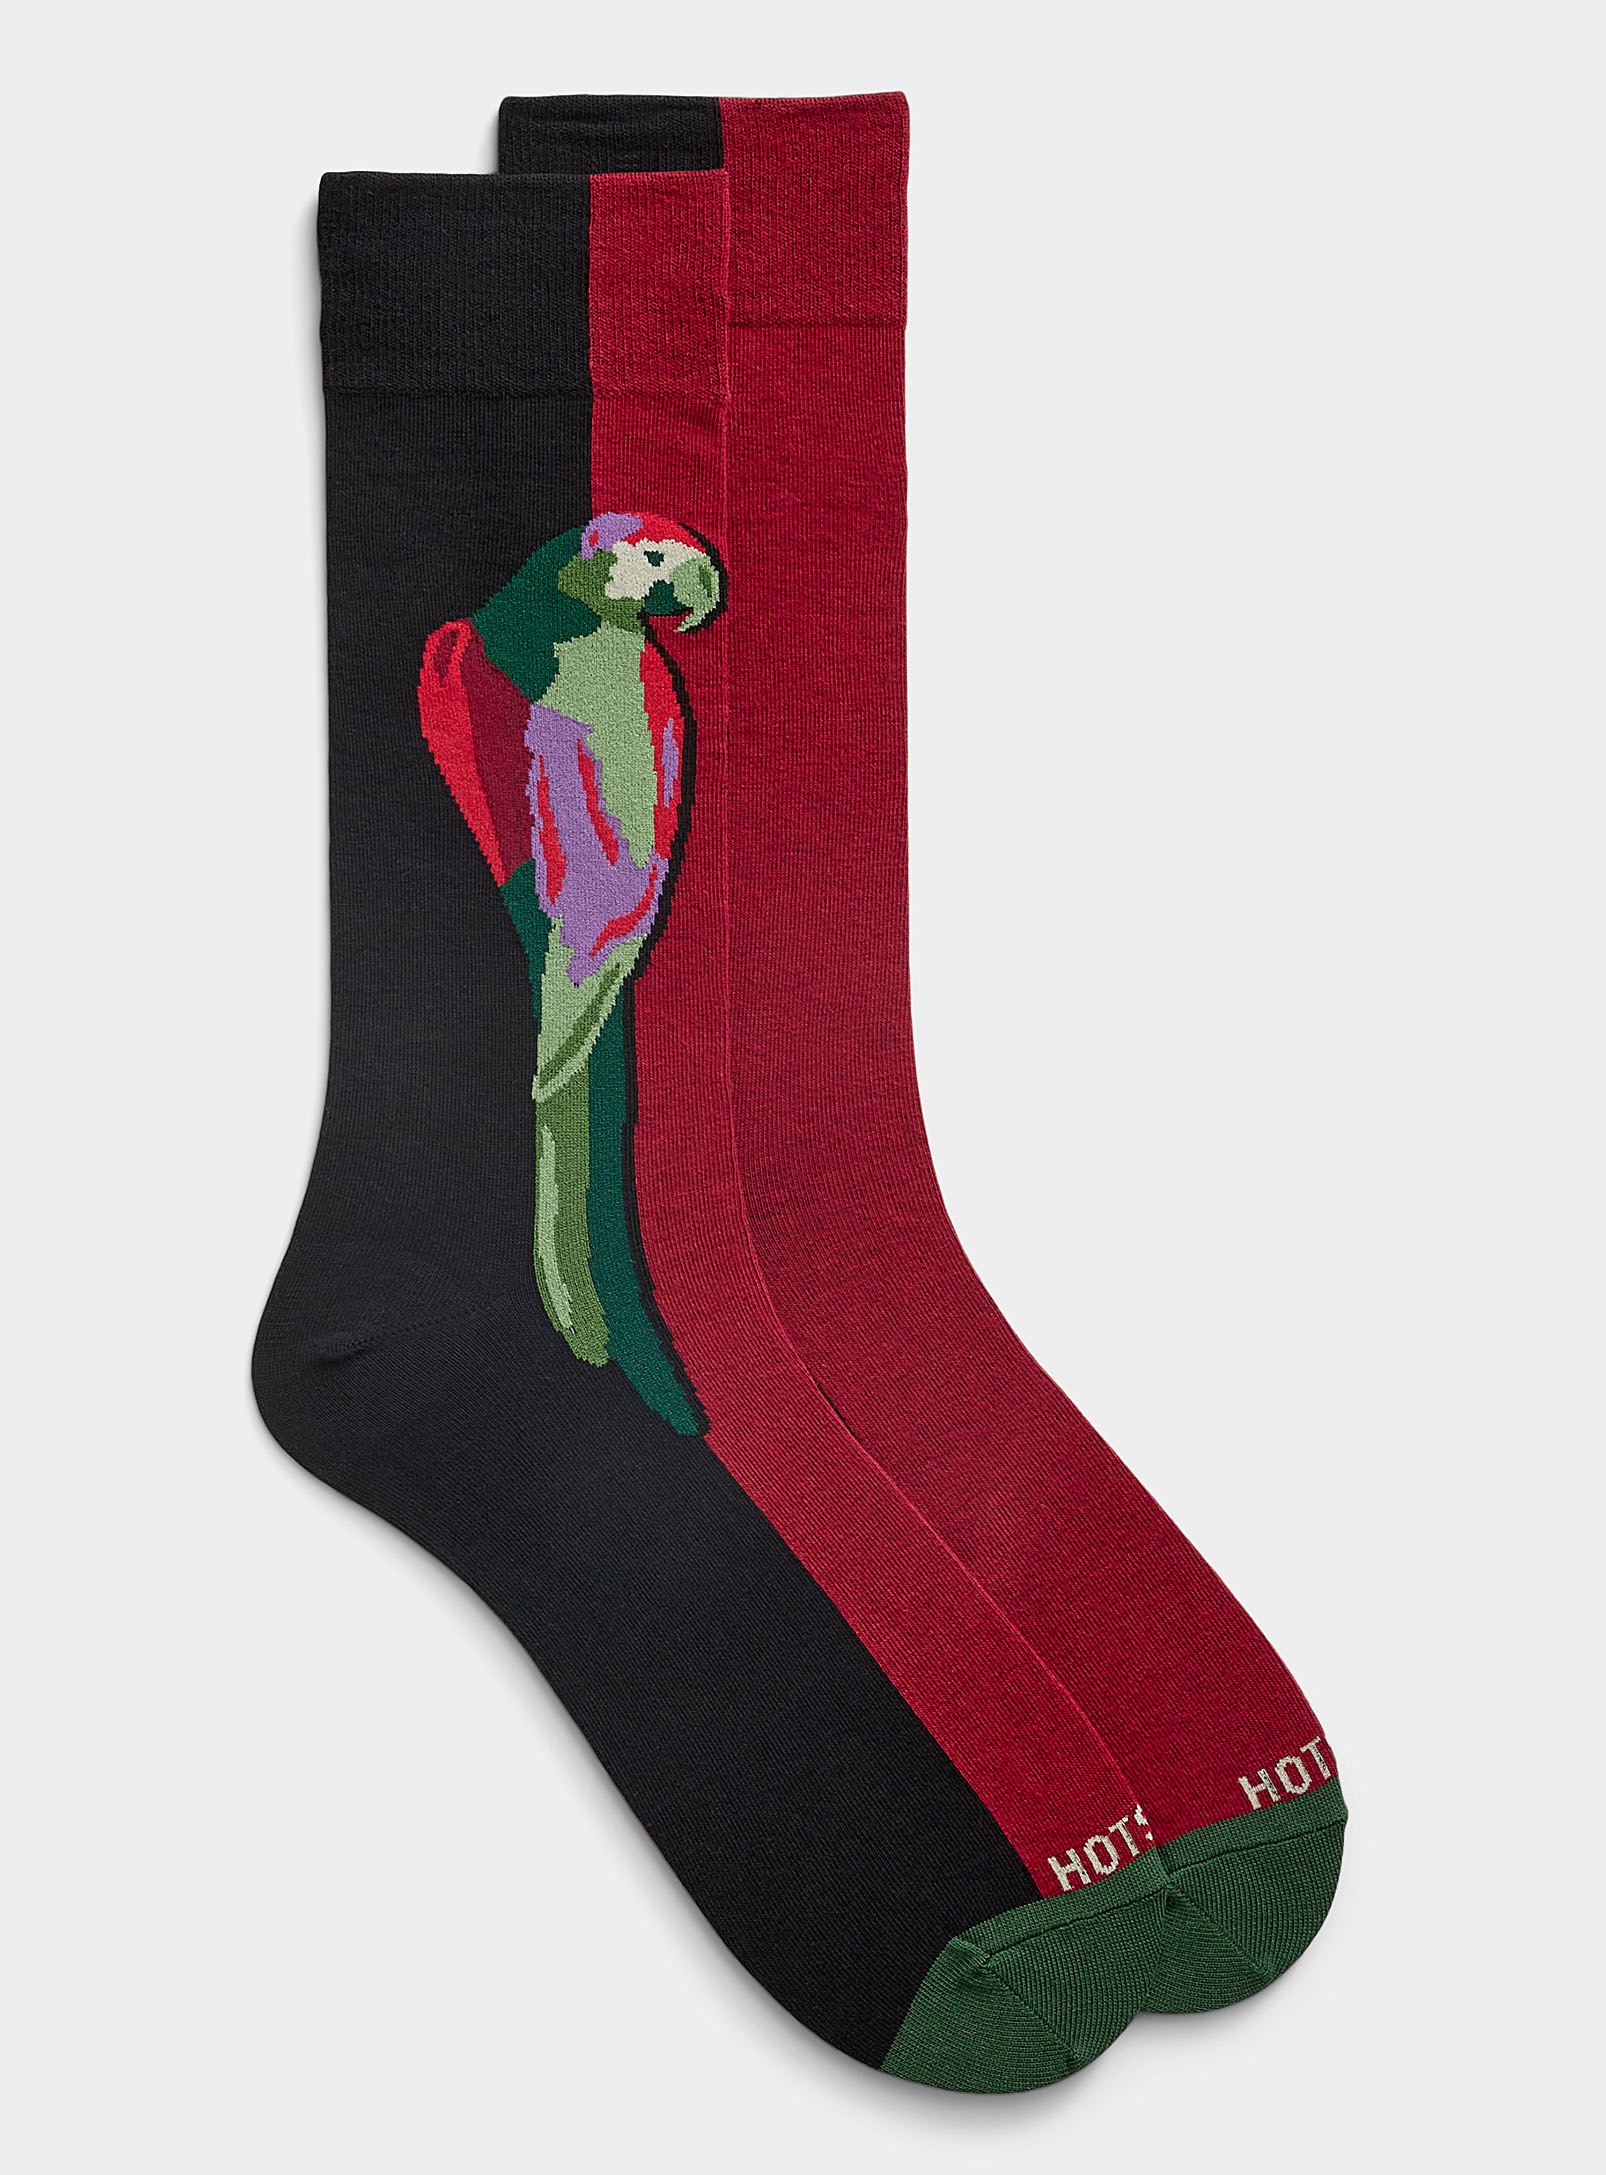 Hot Sox - Men's Parrot two-tone sock